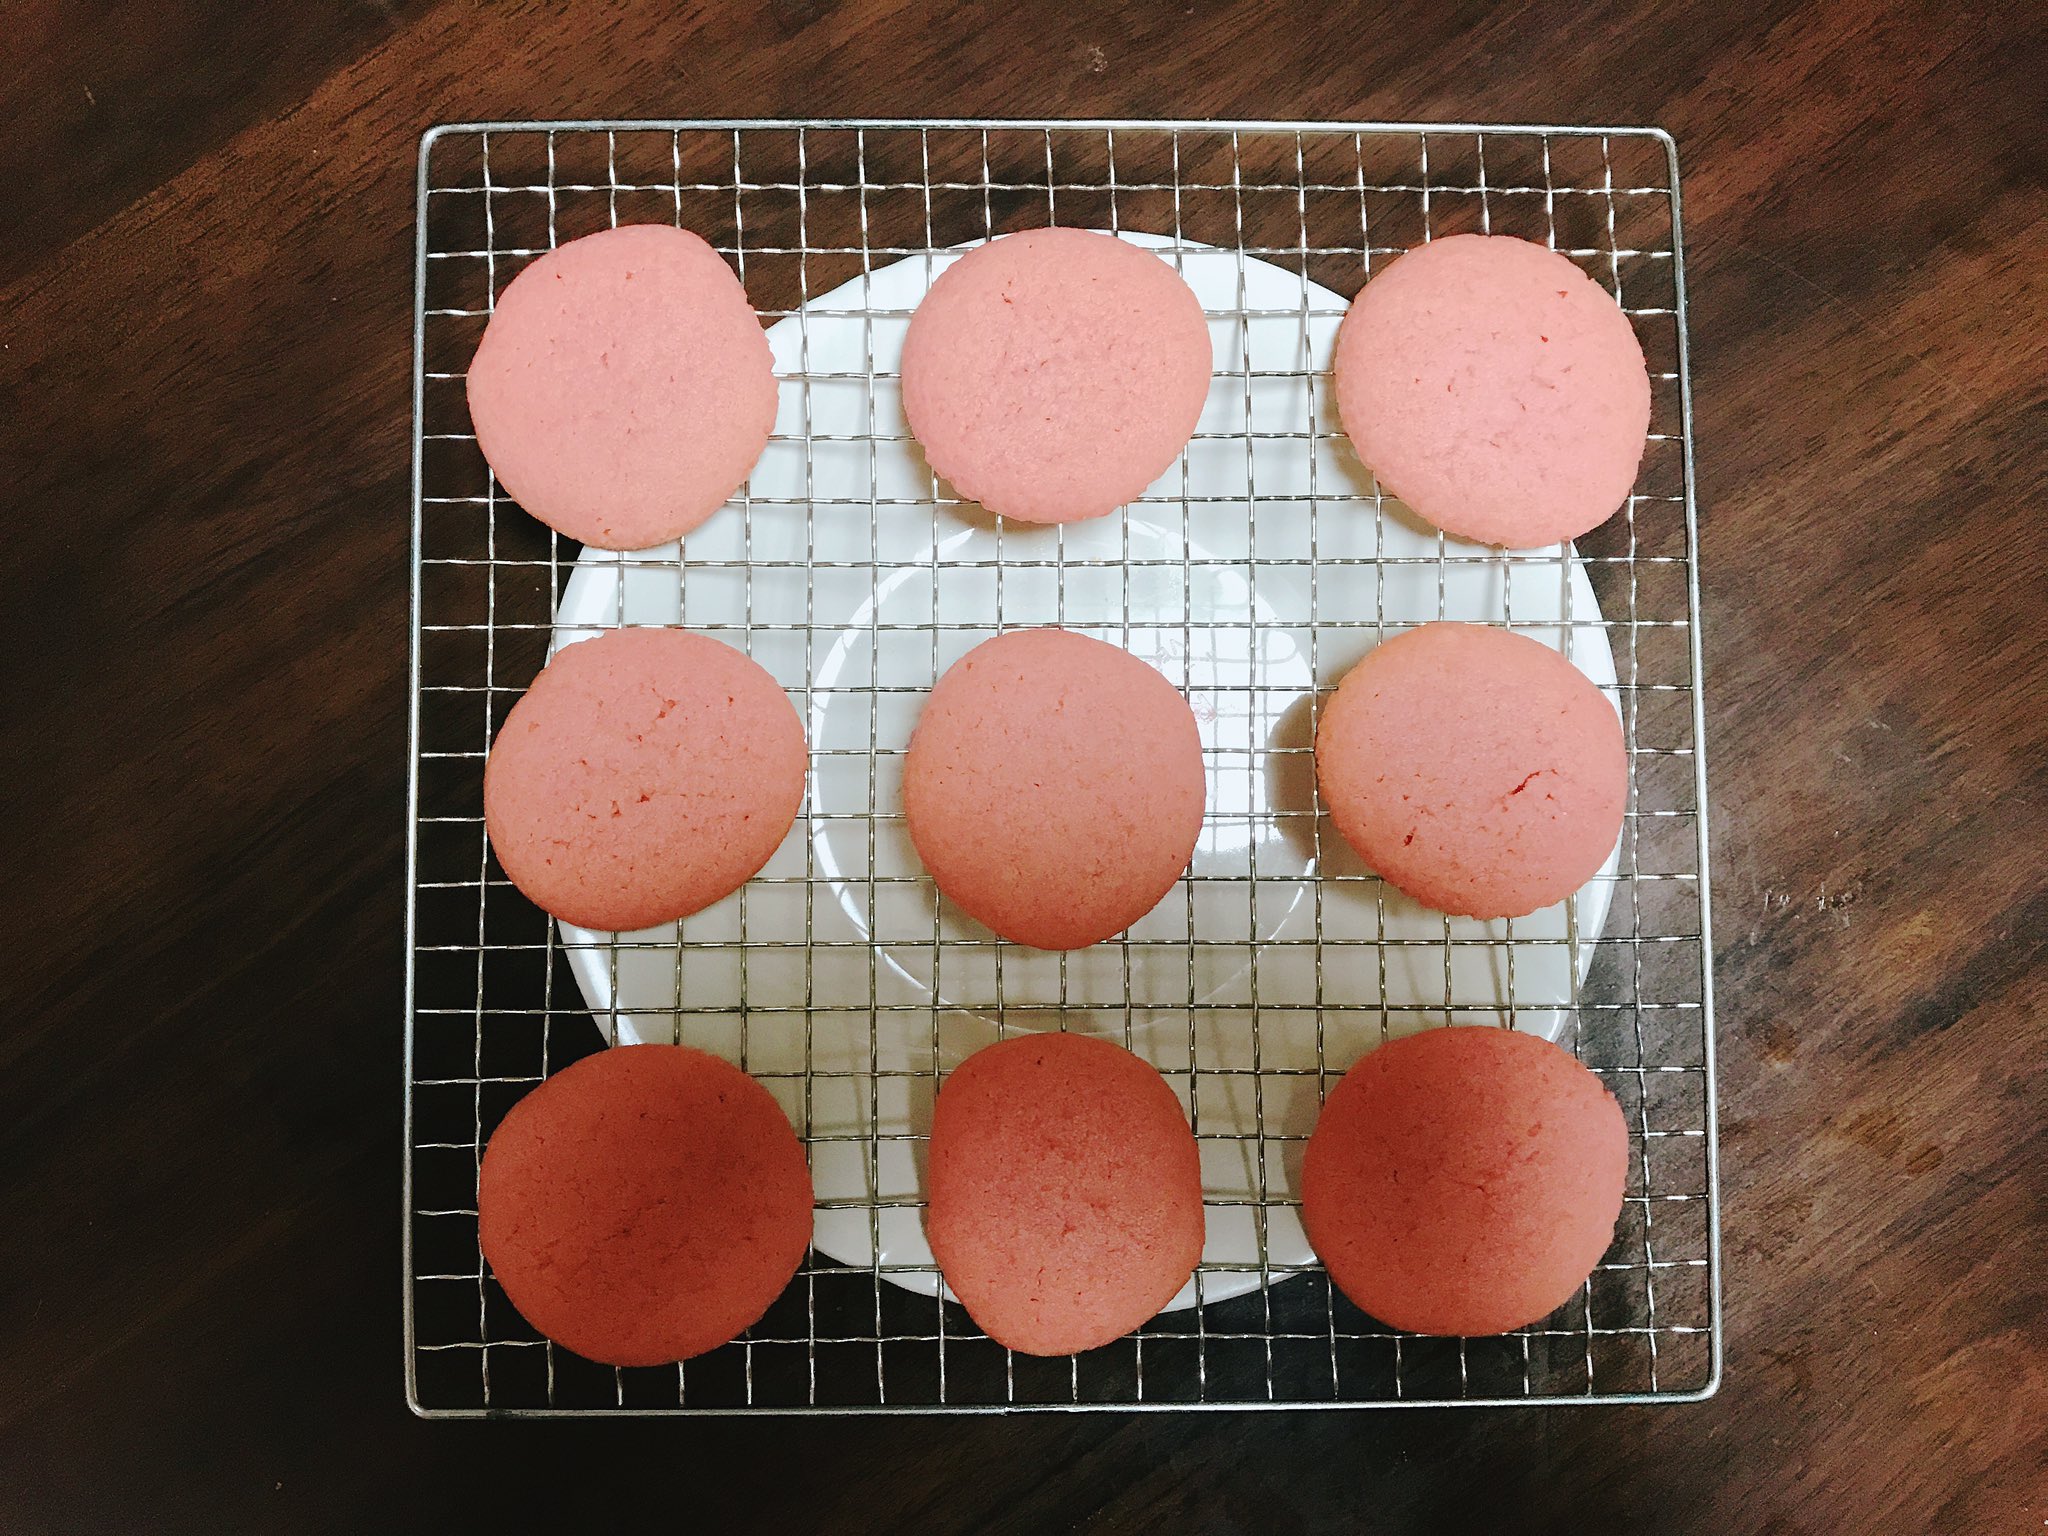 Misaki お菓子作り バタークリーム消費のために ソフトクッキーを作って 挟んでみました 食紅のリベンジも兼ねてクッキーは ピンク色にしてみました 綺麗な色が出たし 味も美味しかった T Co g4naymyh Twitter